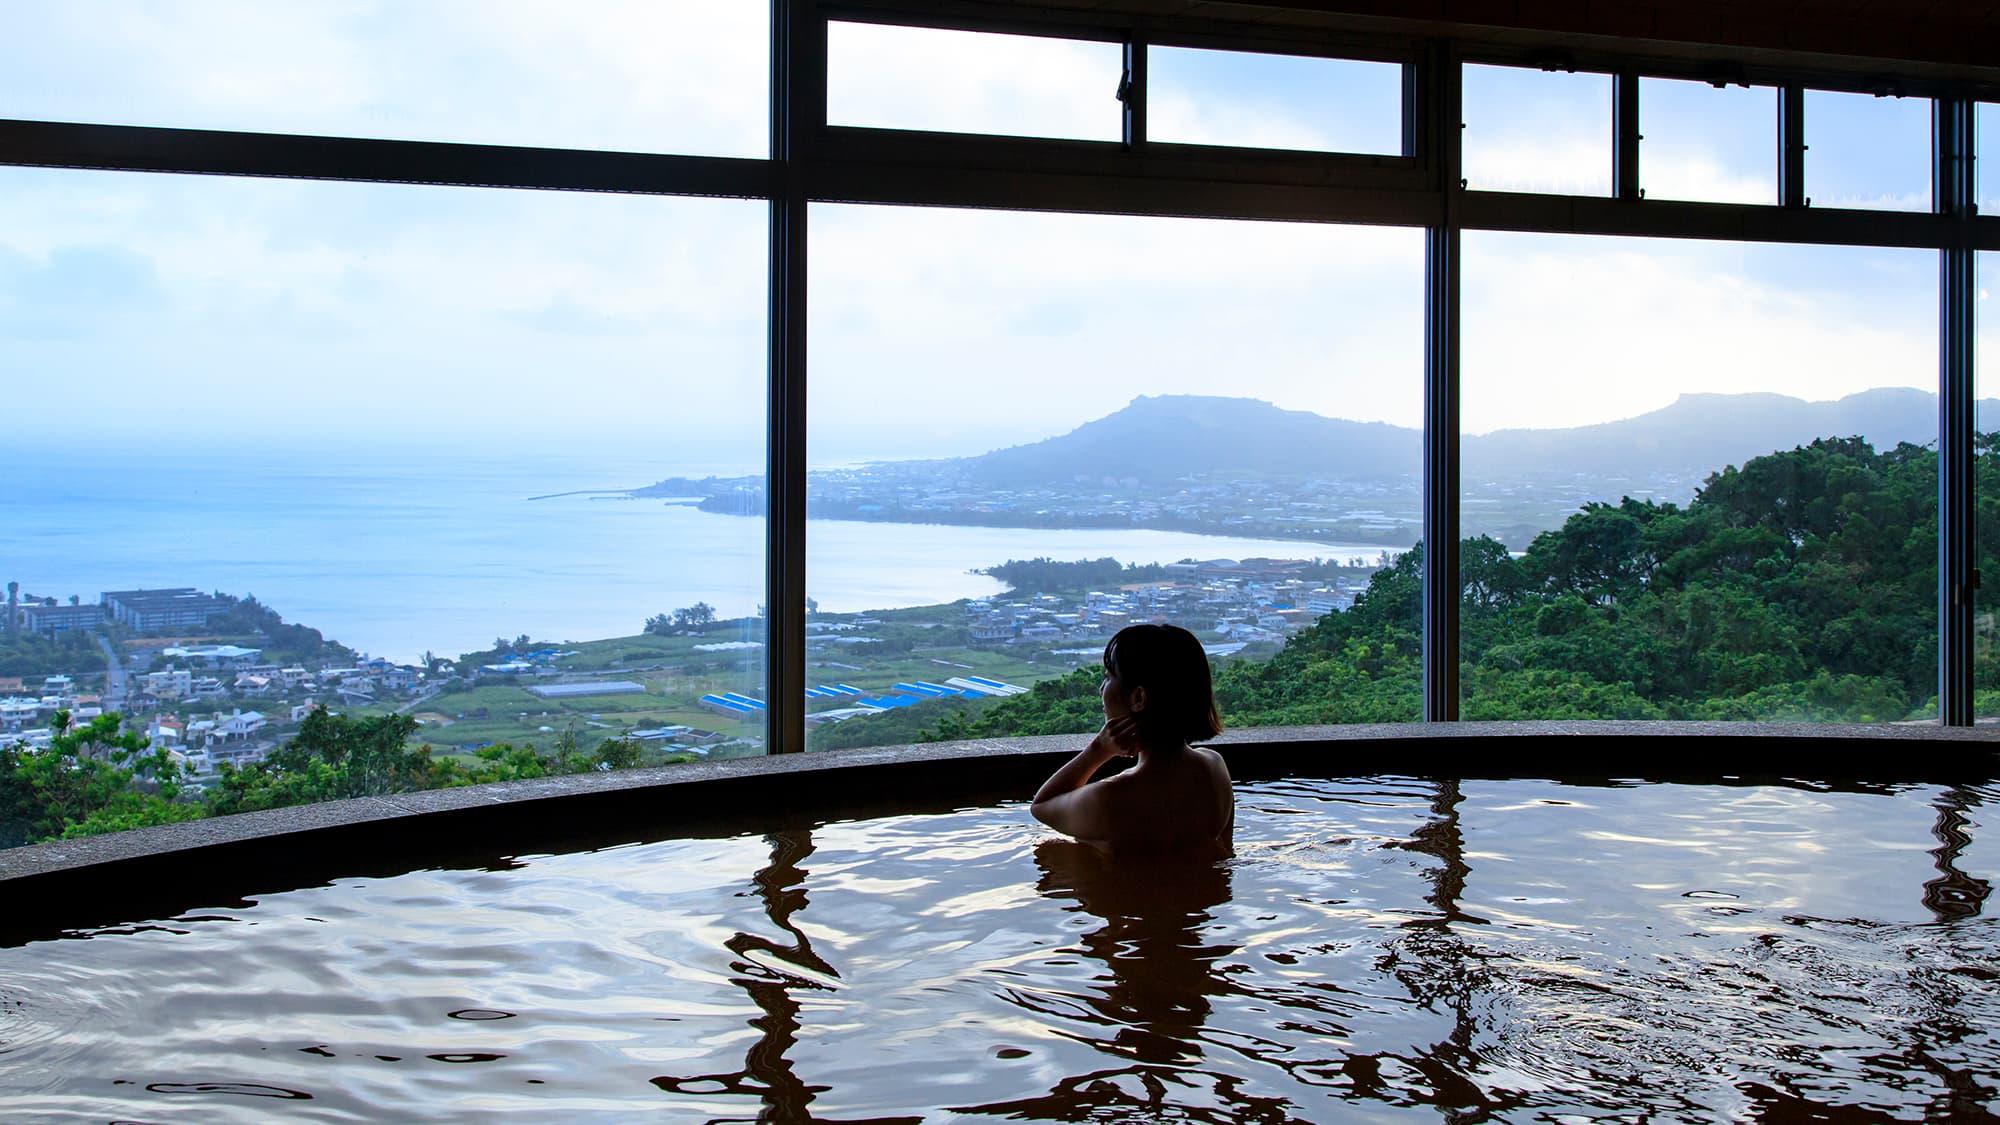 展望風呂は抜群の眺望で太平洋の絶景をお愉しみいただけます